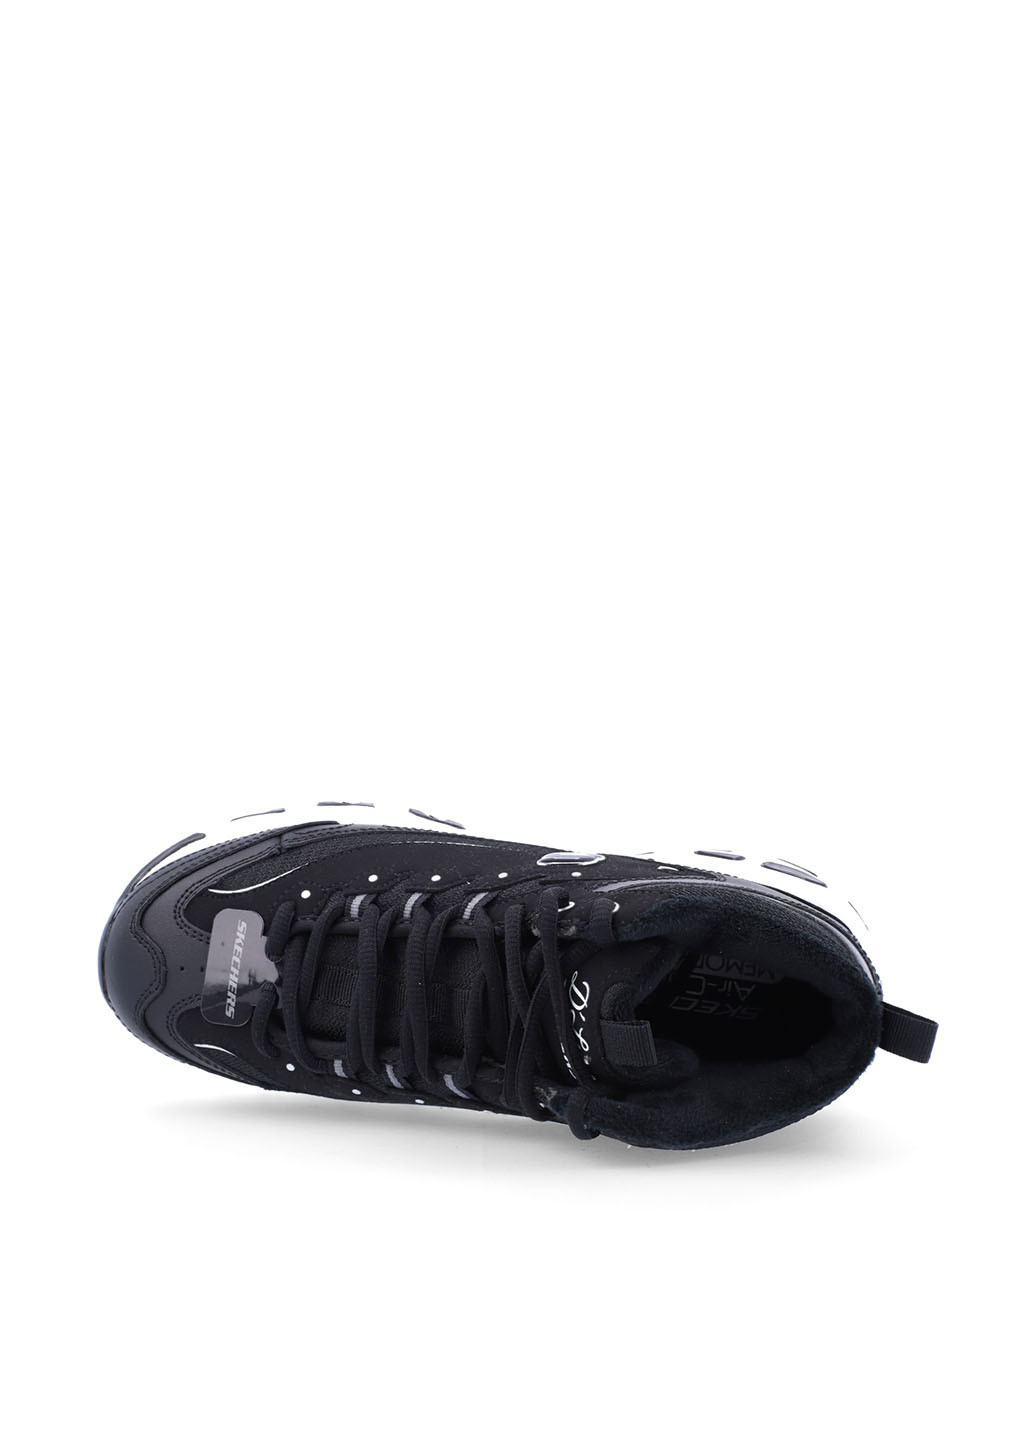 Осенние ботинки Skechers с логотипом тканевые, из искусственной кожи